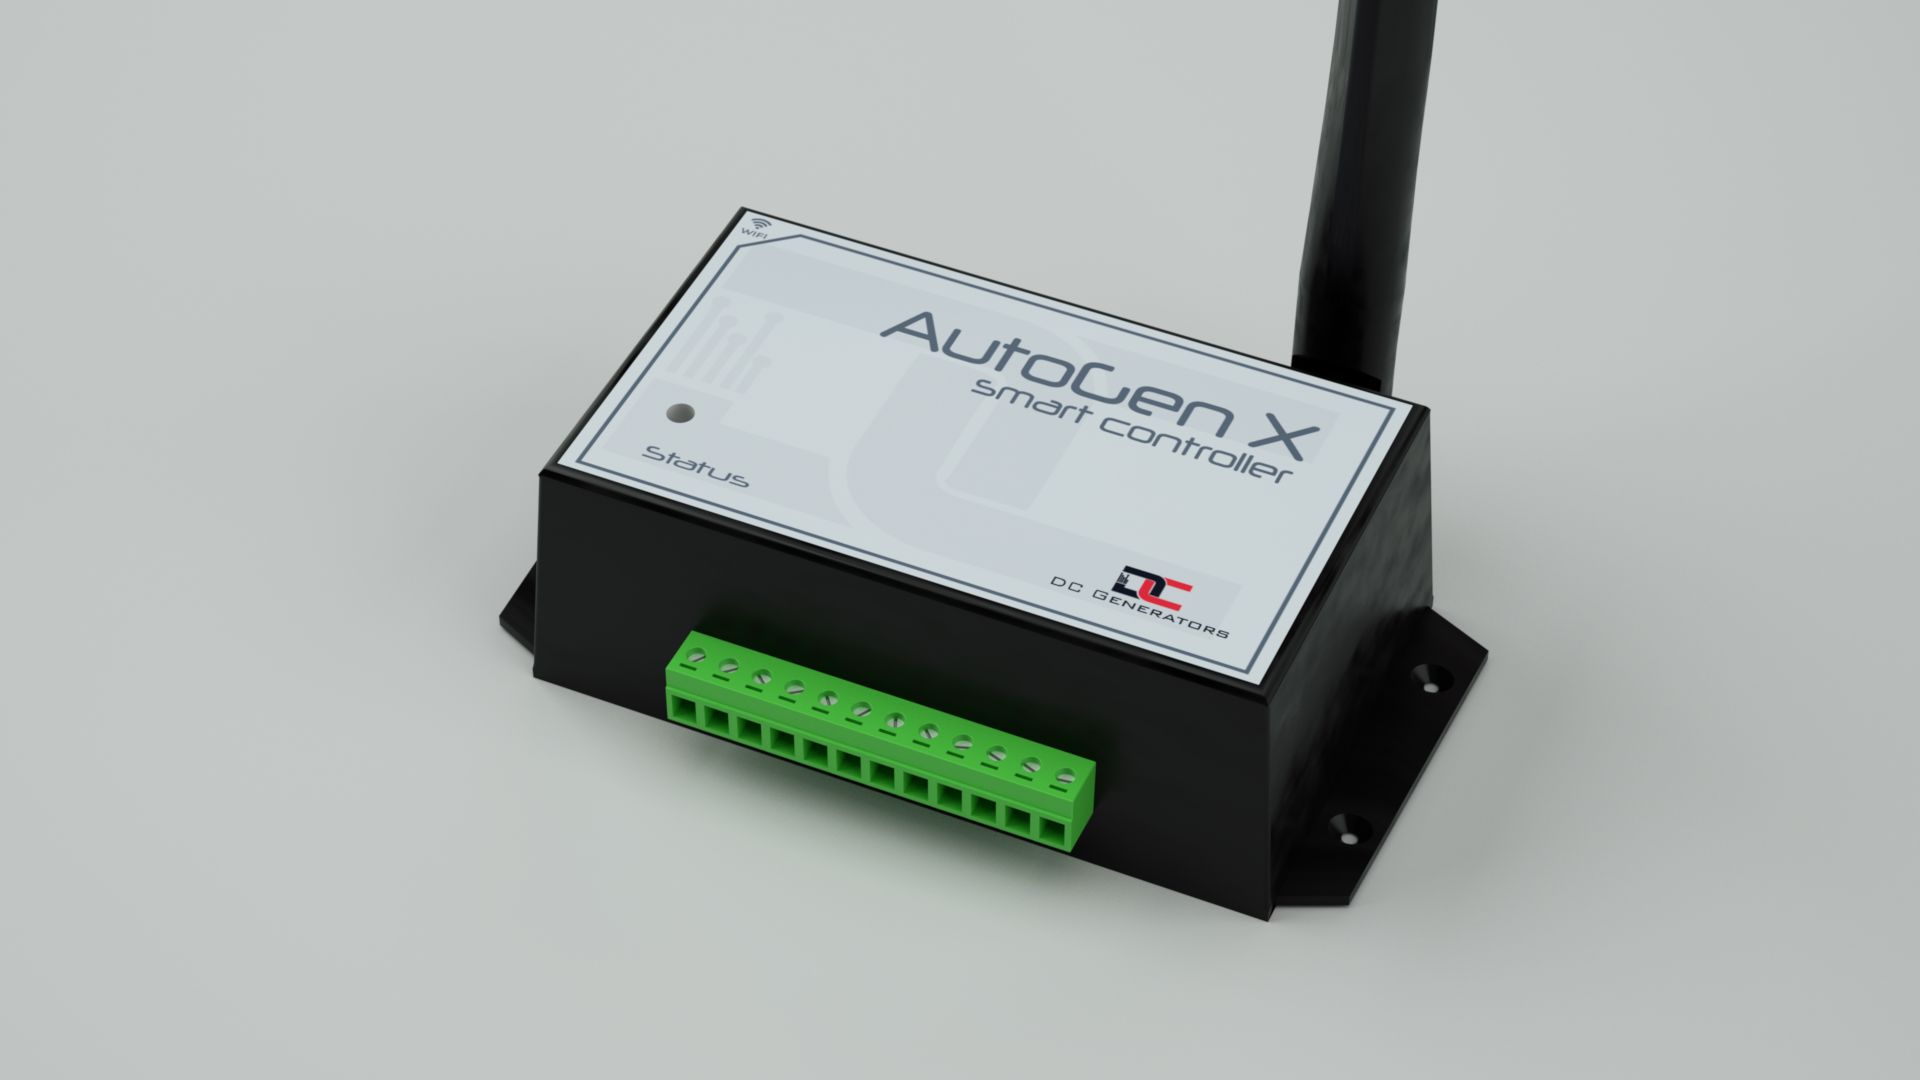 AutoGen X smart controller